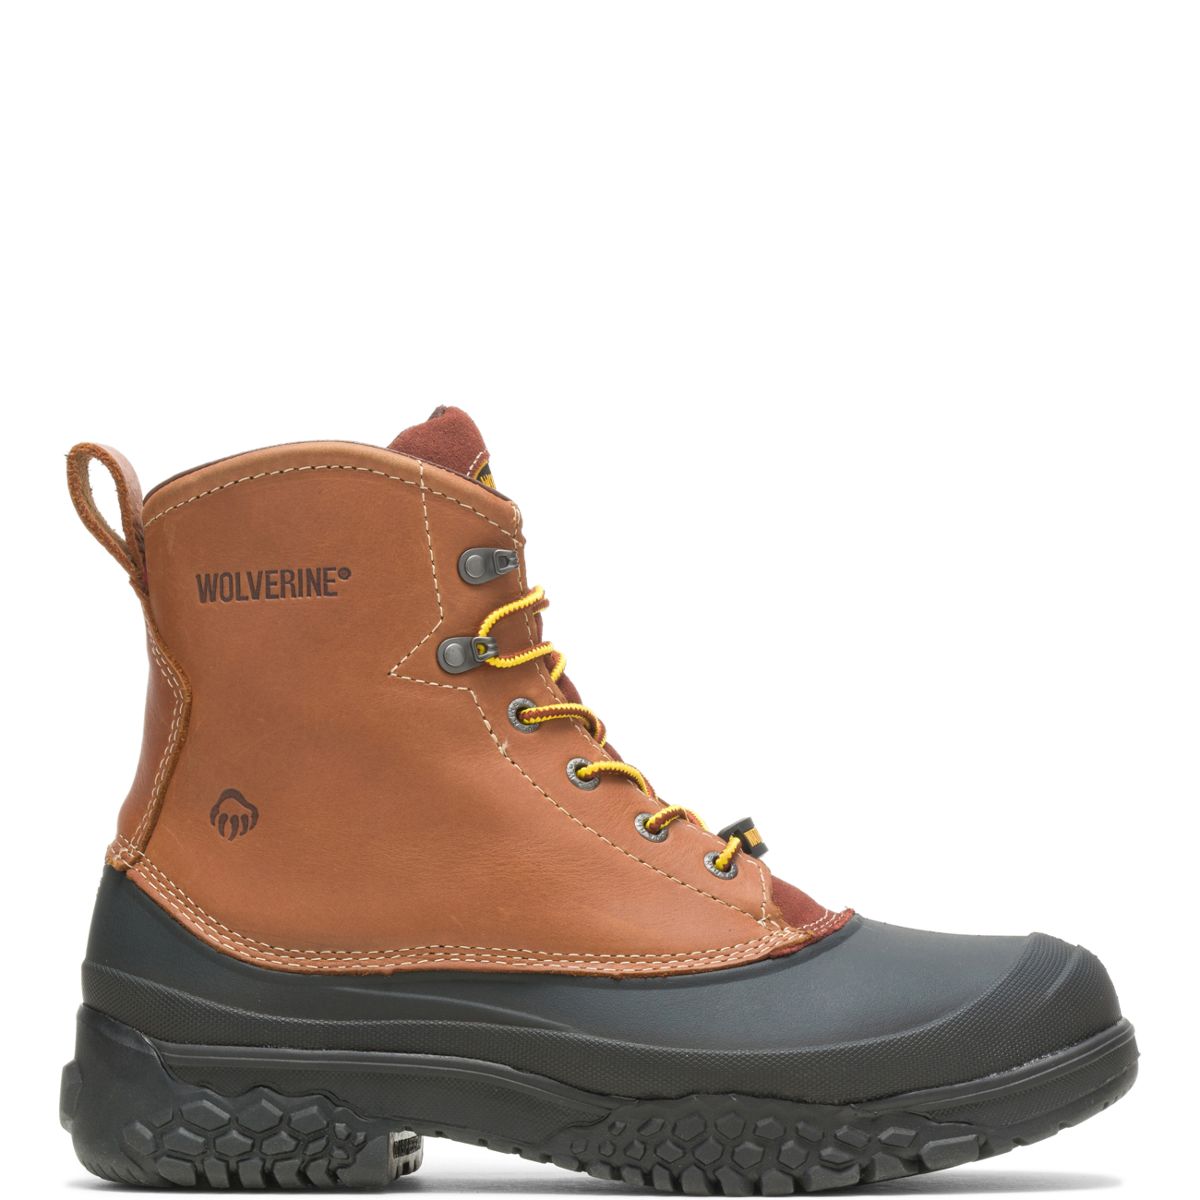 wolverine work boots